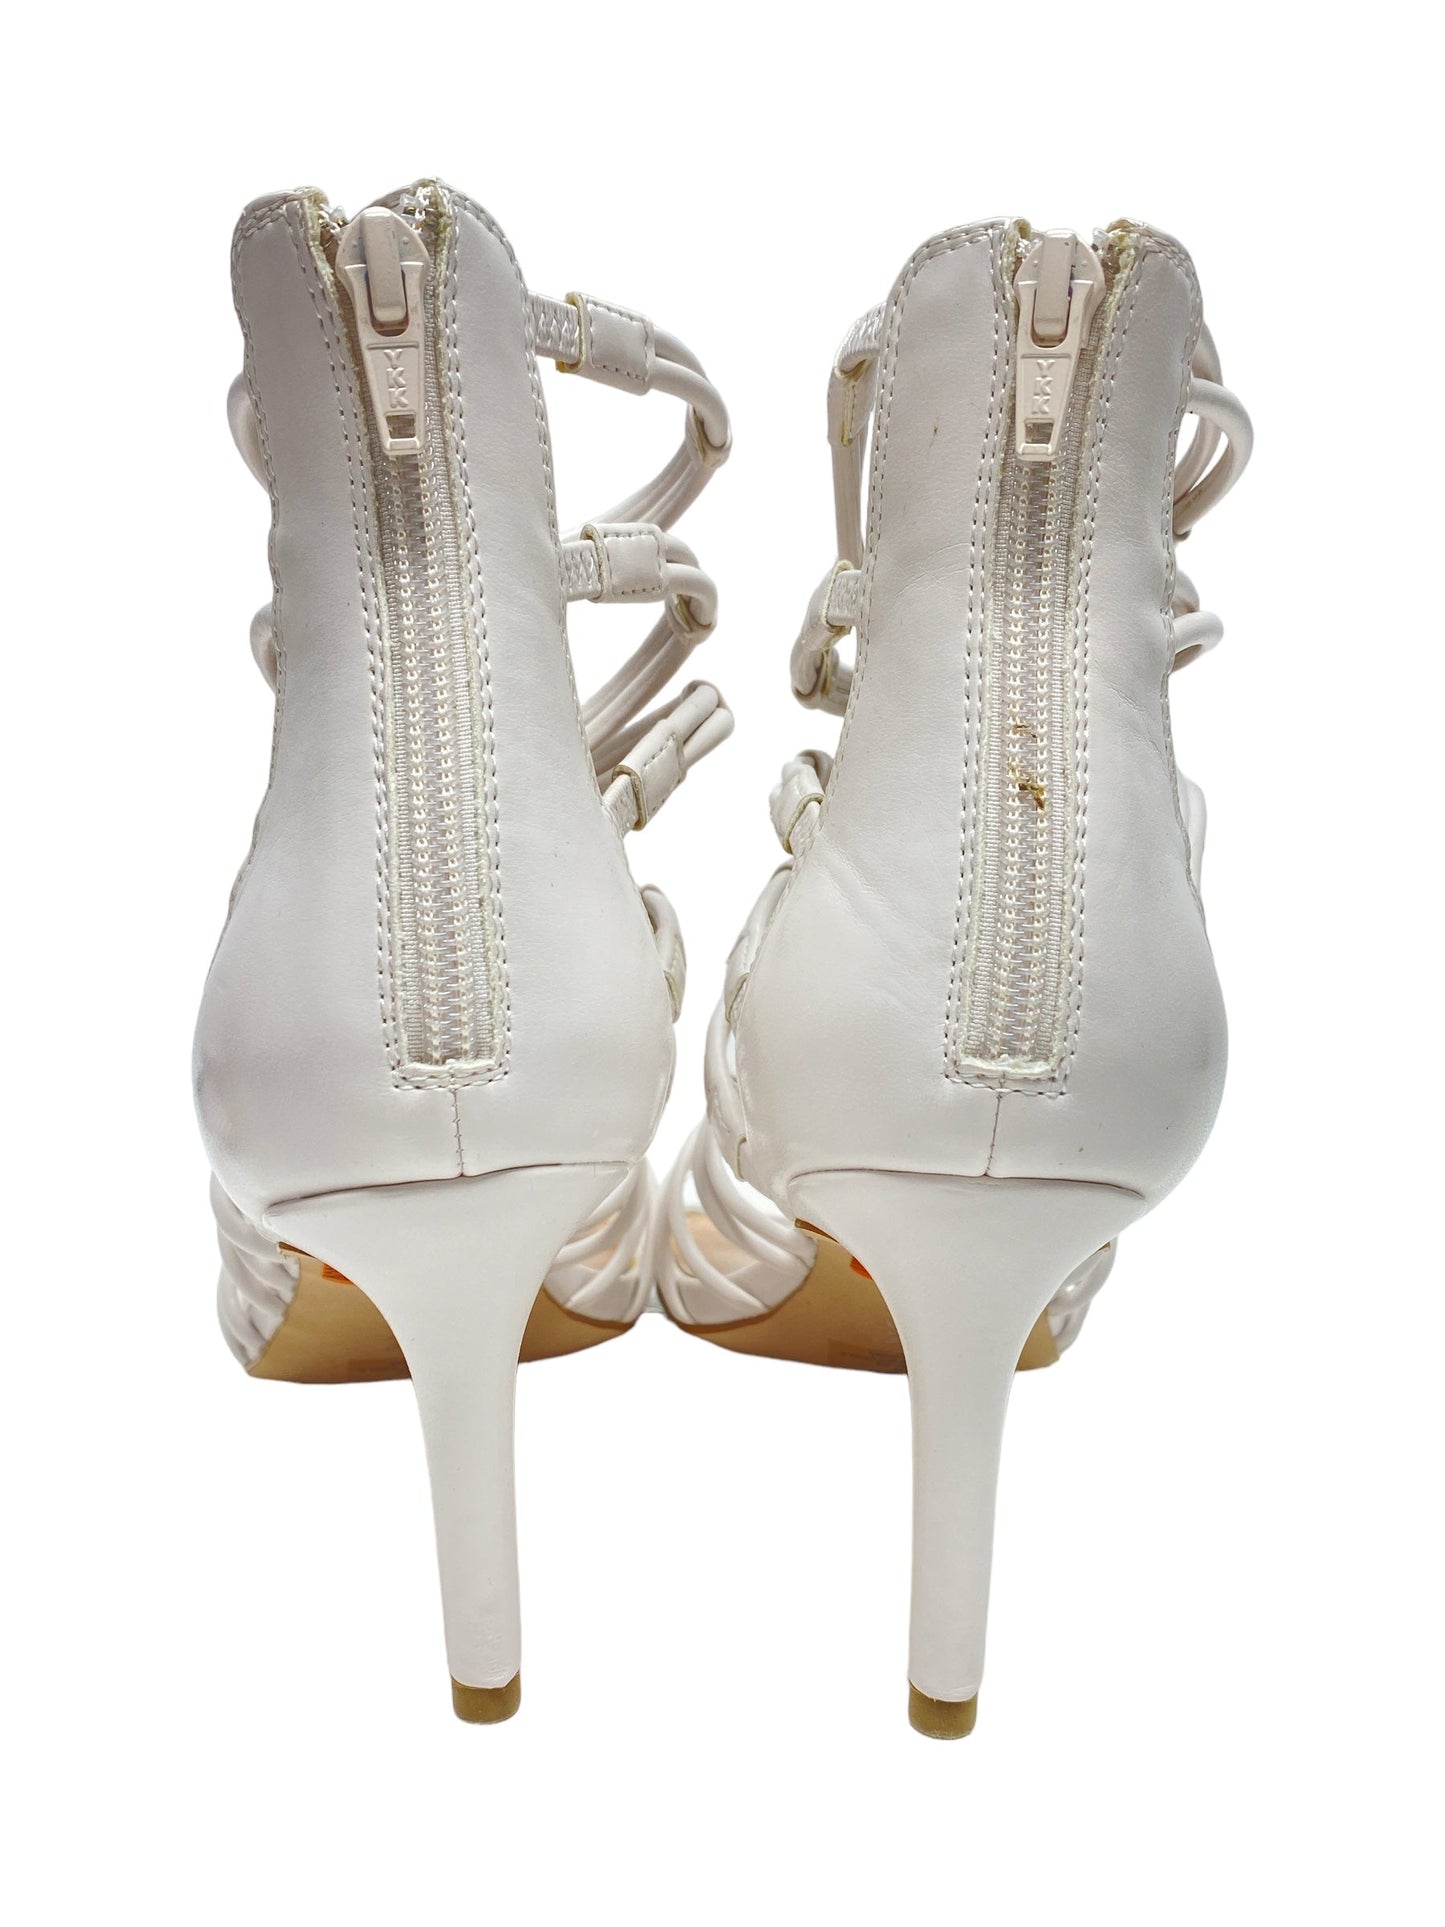 Sandals Heels Stiletto By Bcbg  Size: 9